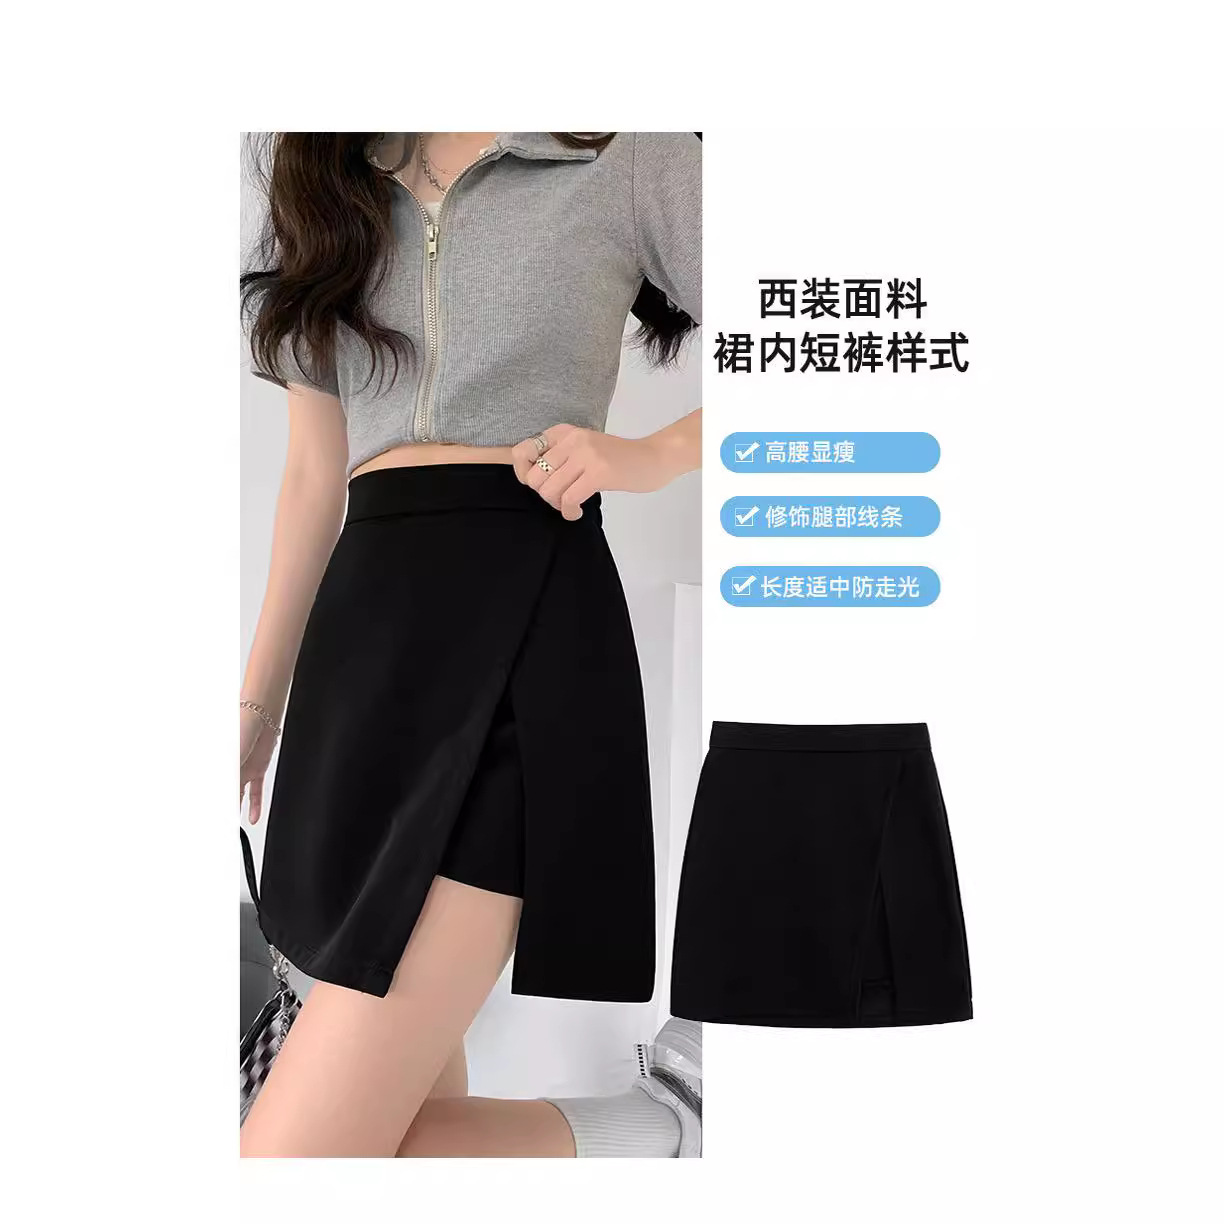 Black short skirt women's summer anti-exposure split suit skirt high waist slimming A- line plus size sheath short skirt